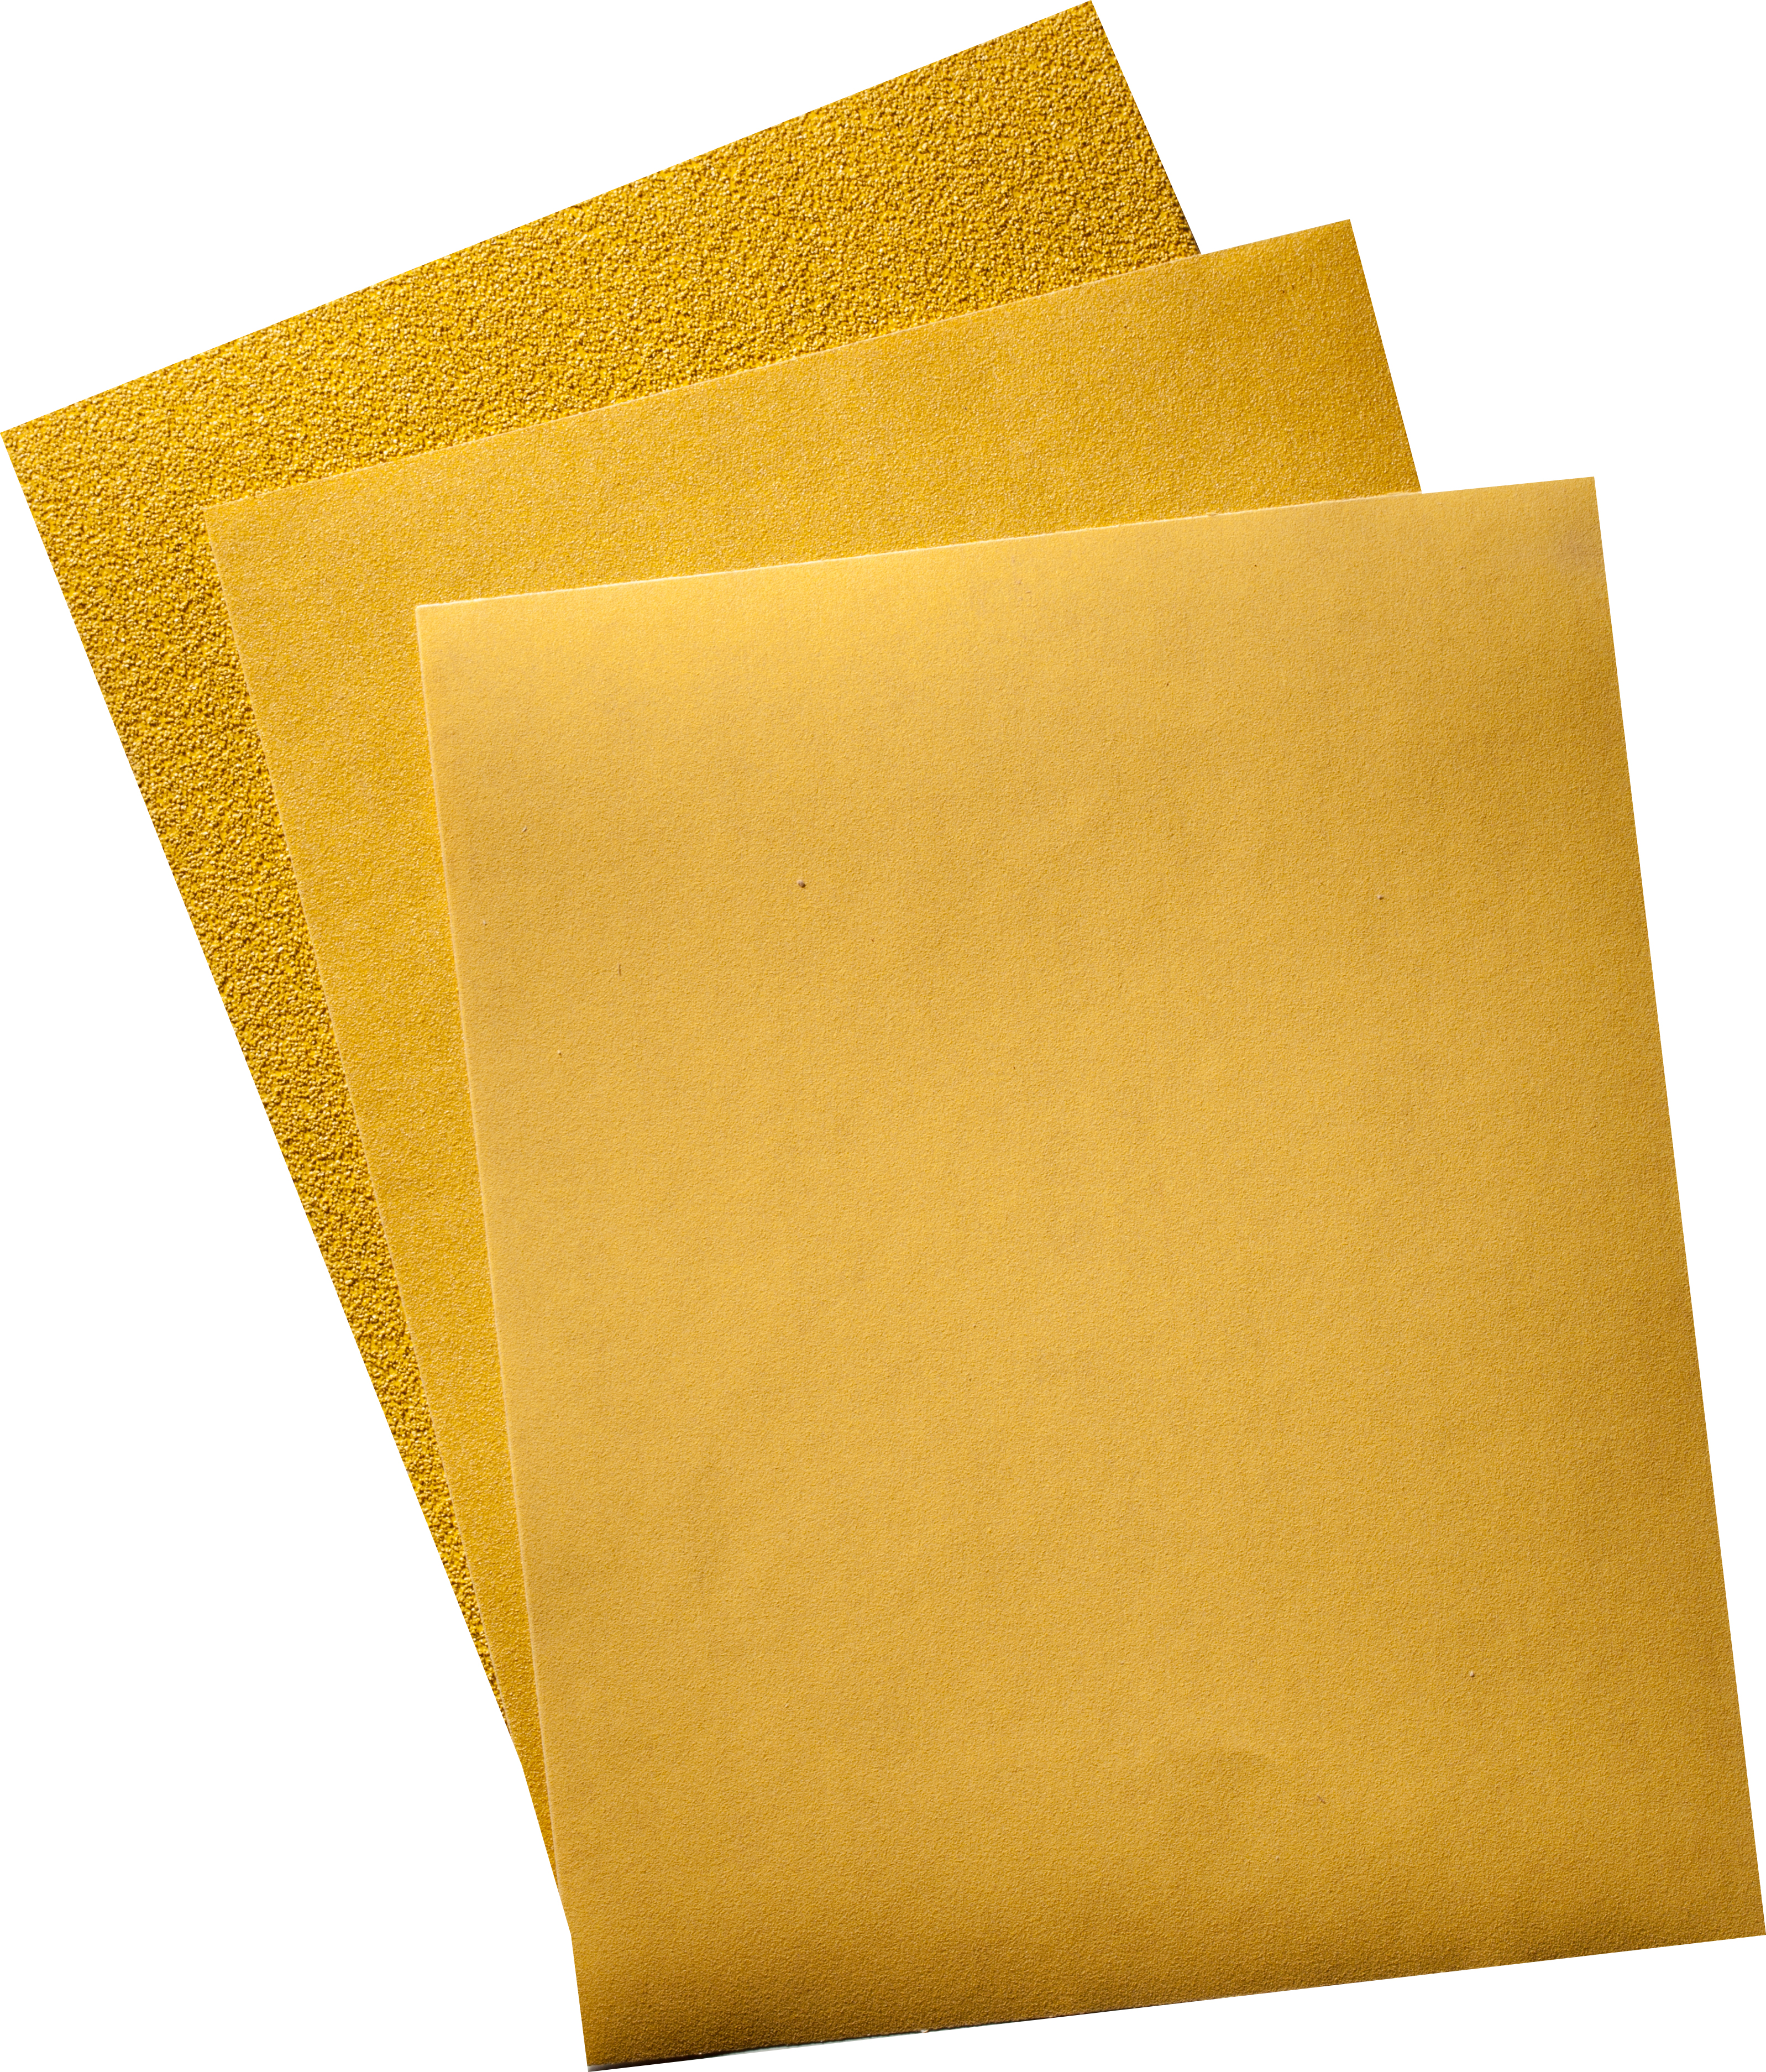 AY-D 9 X 11 PAPER SHEETS 40X - Sandpaper Sheets